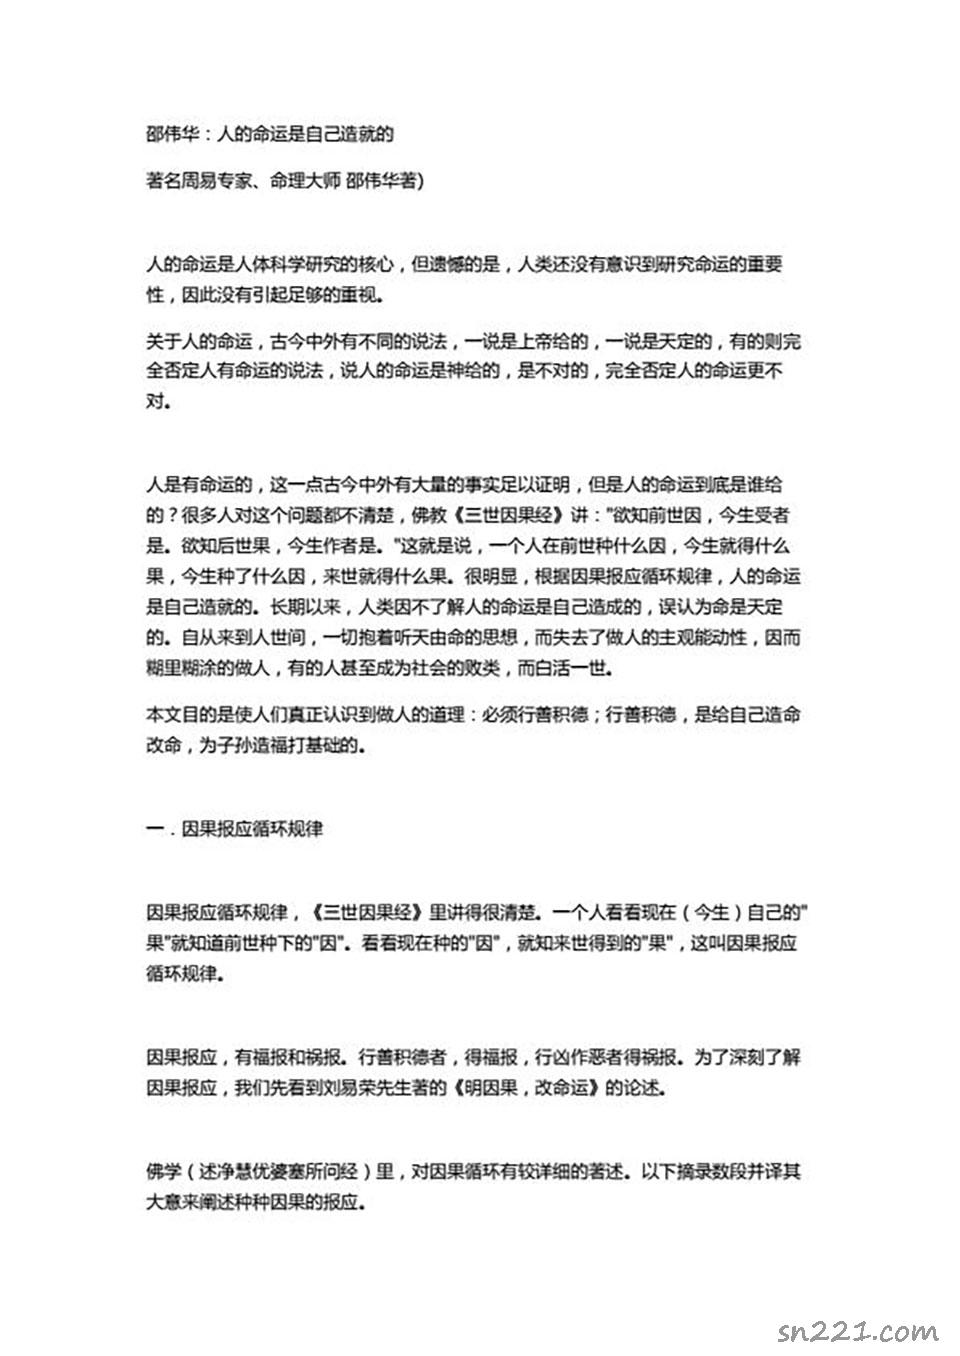 邵偉華-人的命運是自己造就的12頁.pdf